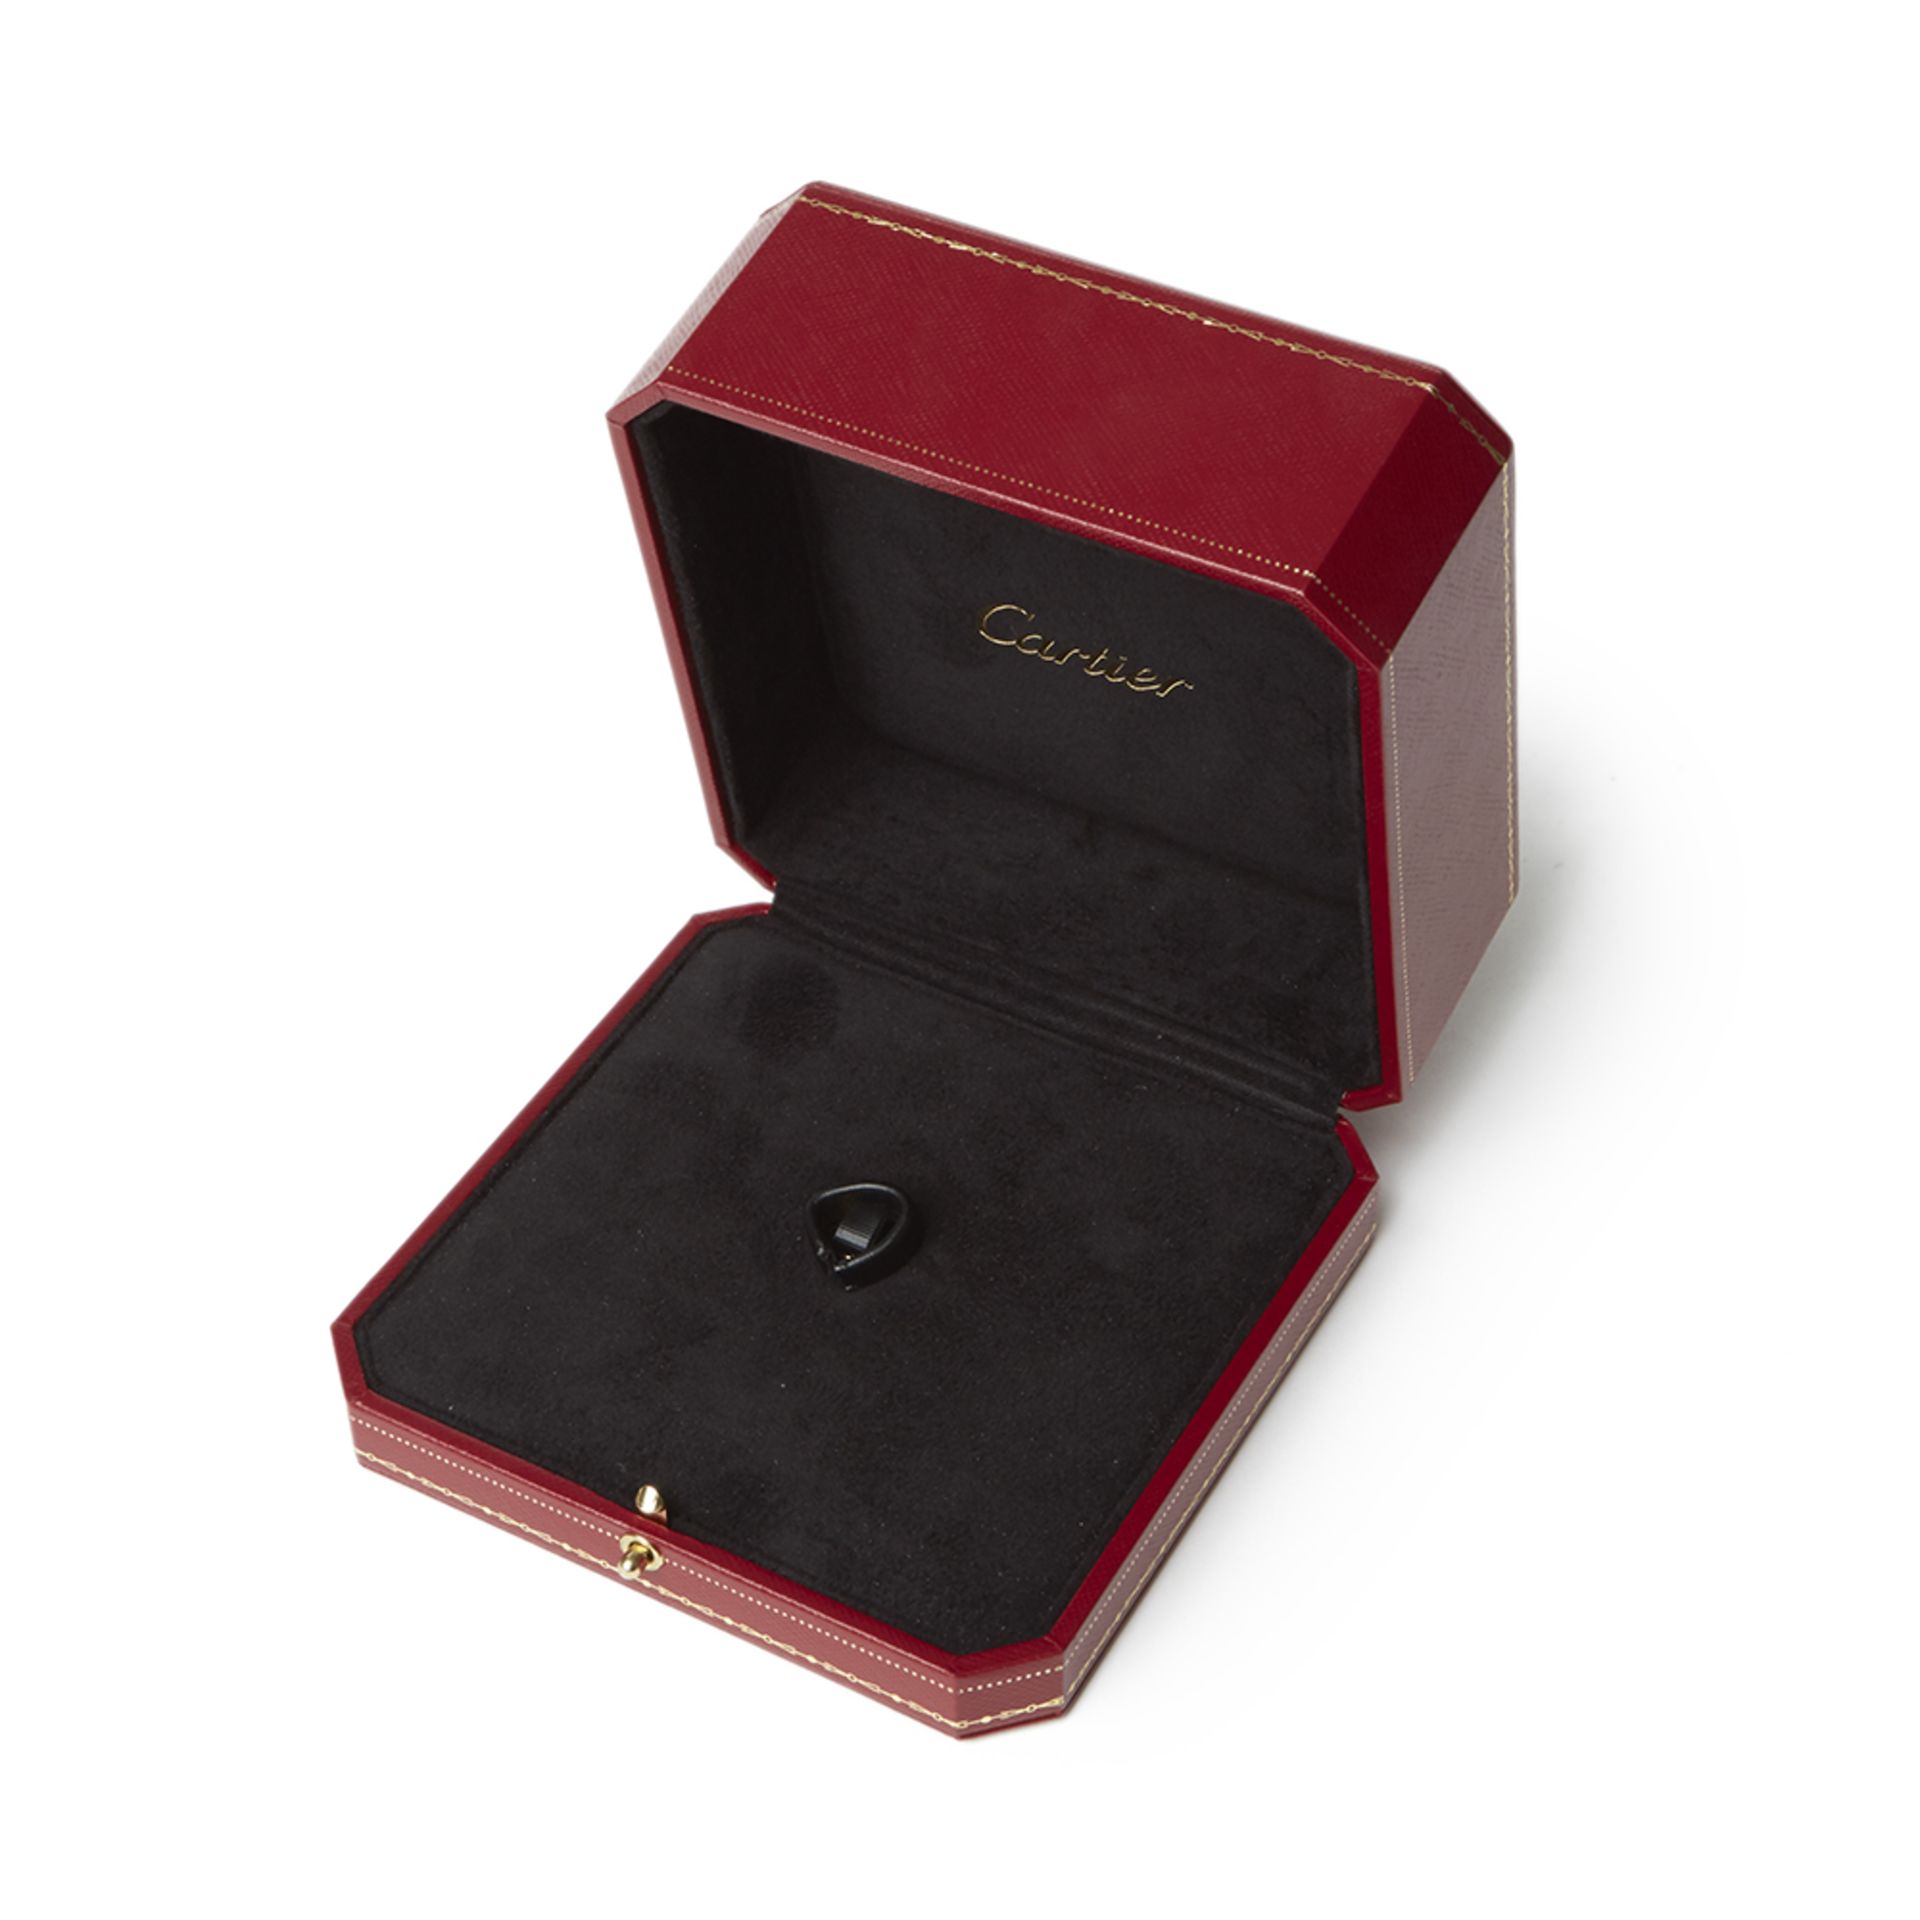 Cartier 18k Rose Gold Smoky Quartz & Diamond Lotus Ring - Image 13 of 13